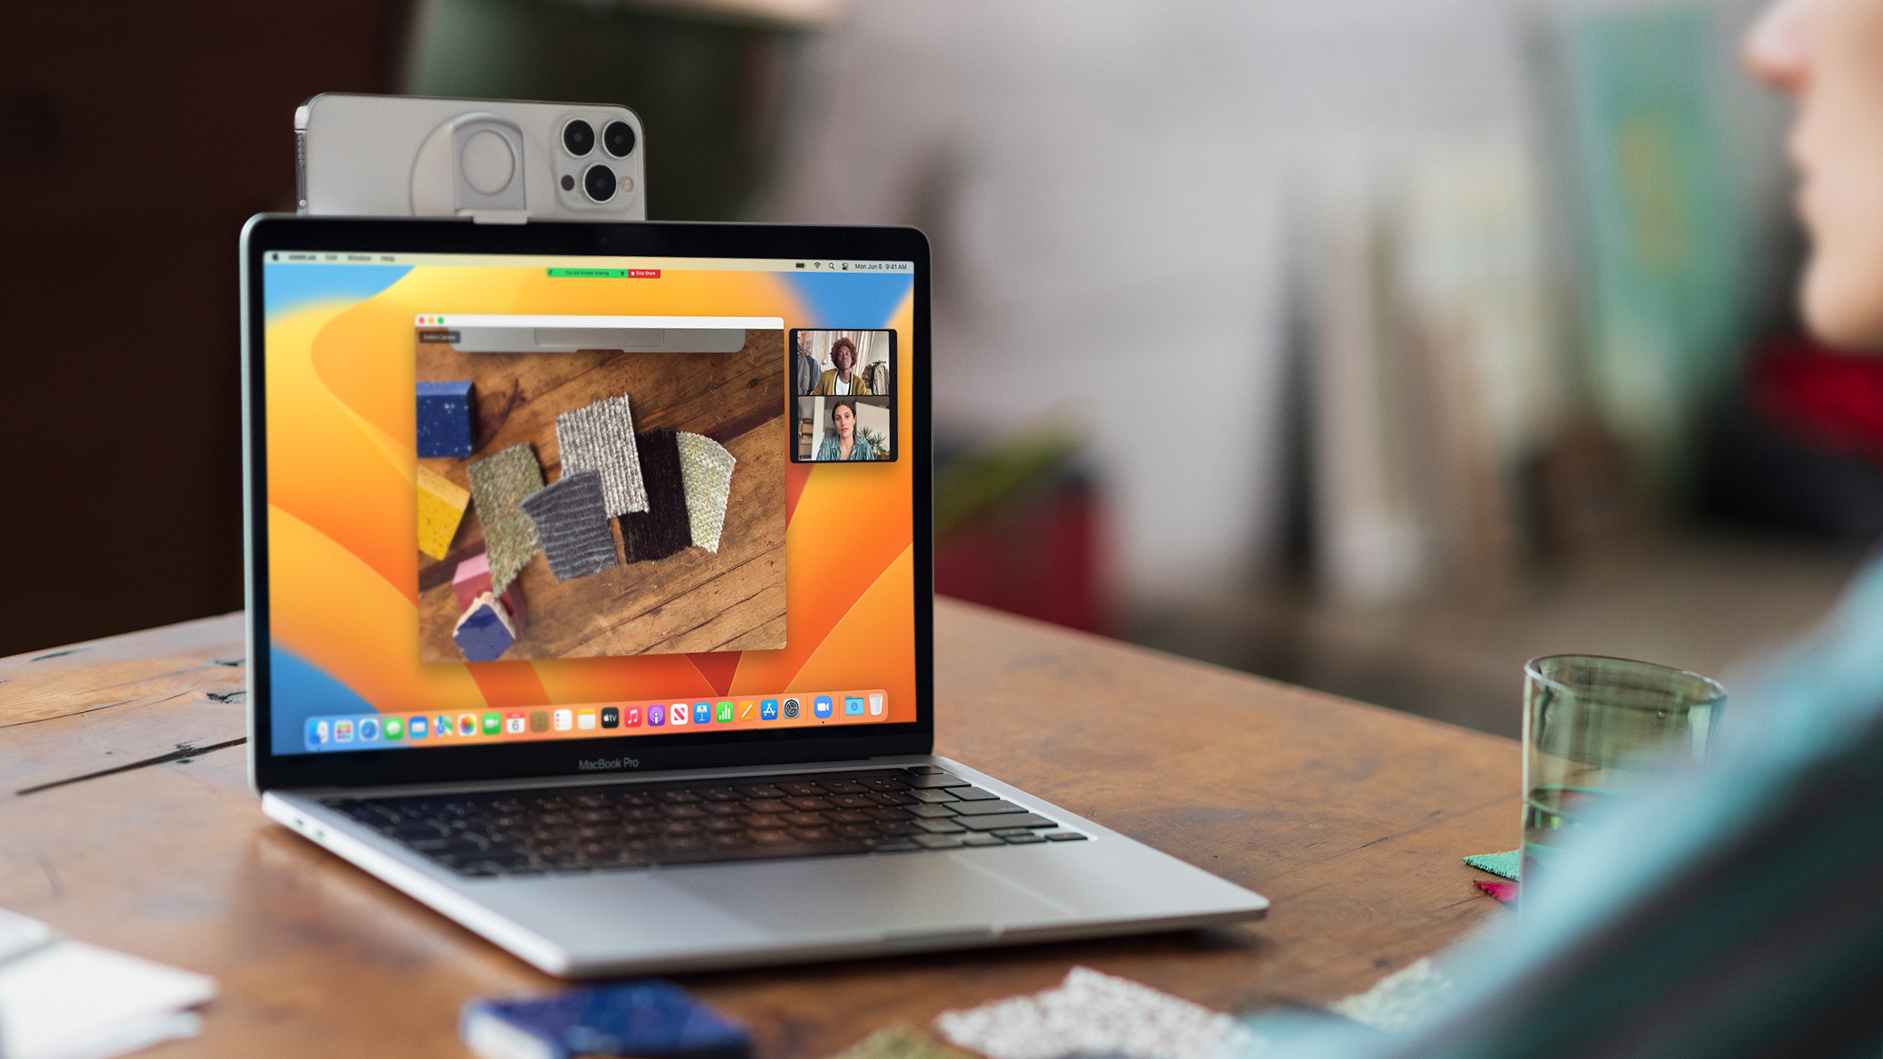 Das Bild zeigt ein Macbook mit montiertem iPhone, welches über Continuity Cam als Webcam verwendet wird.